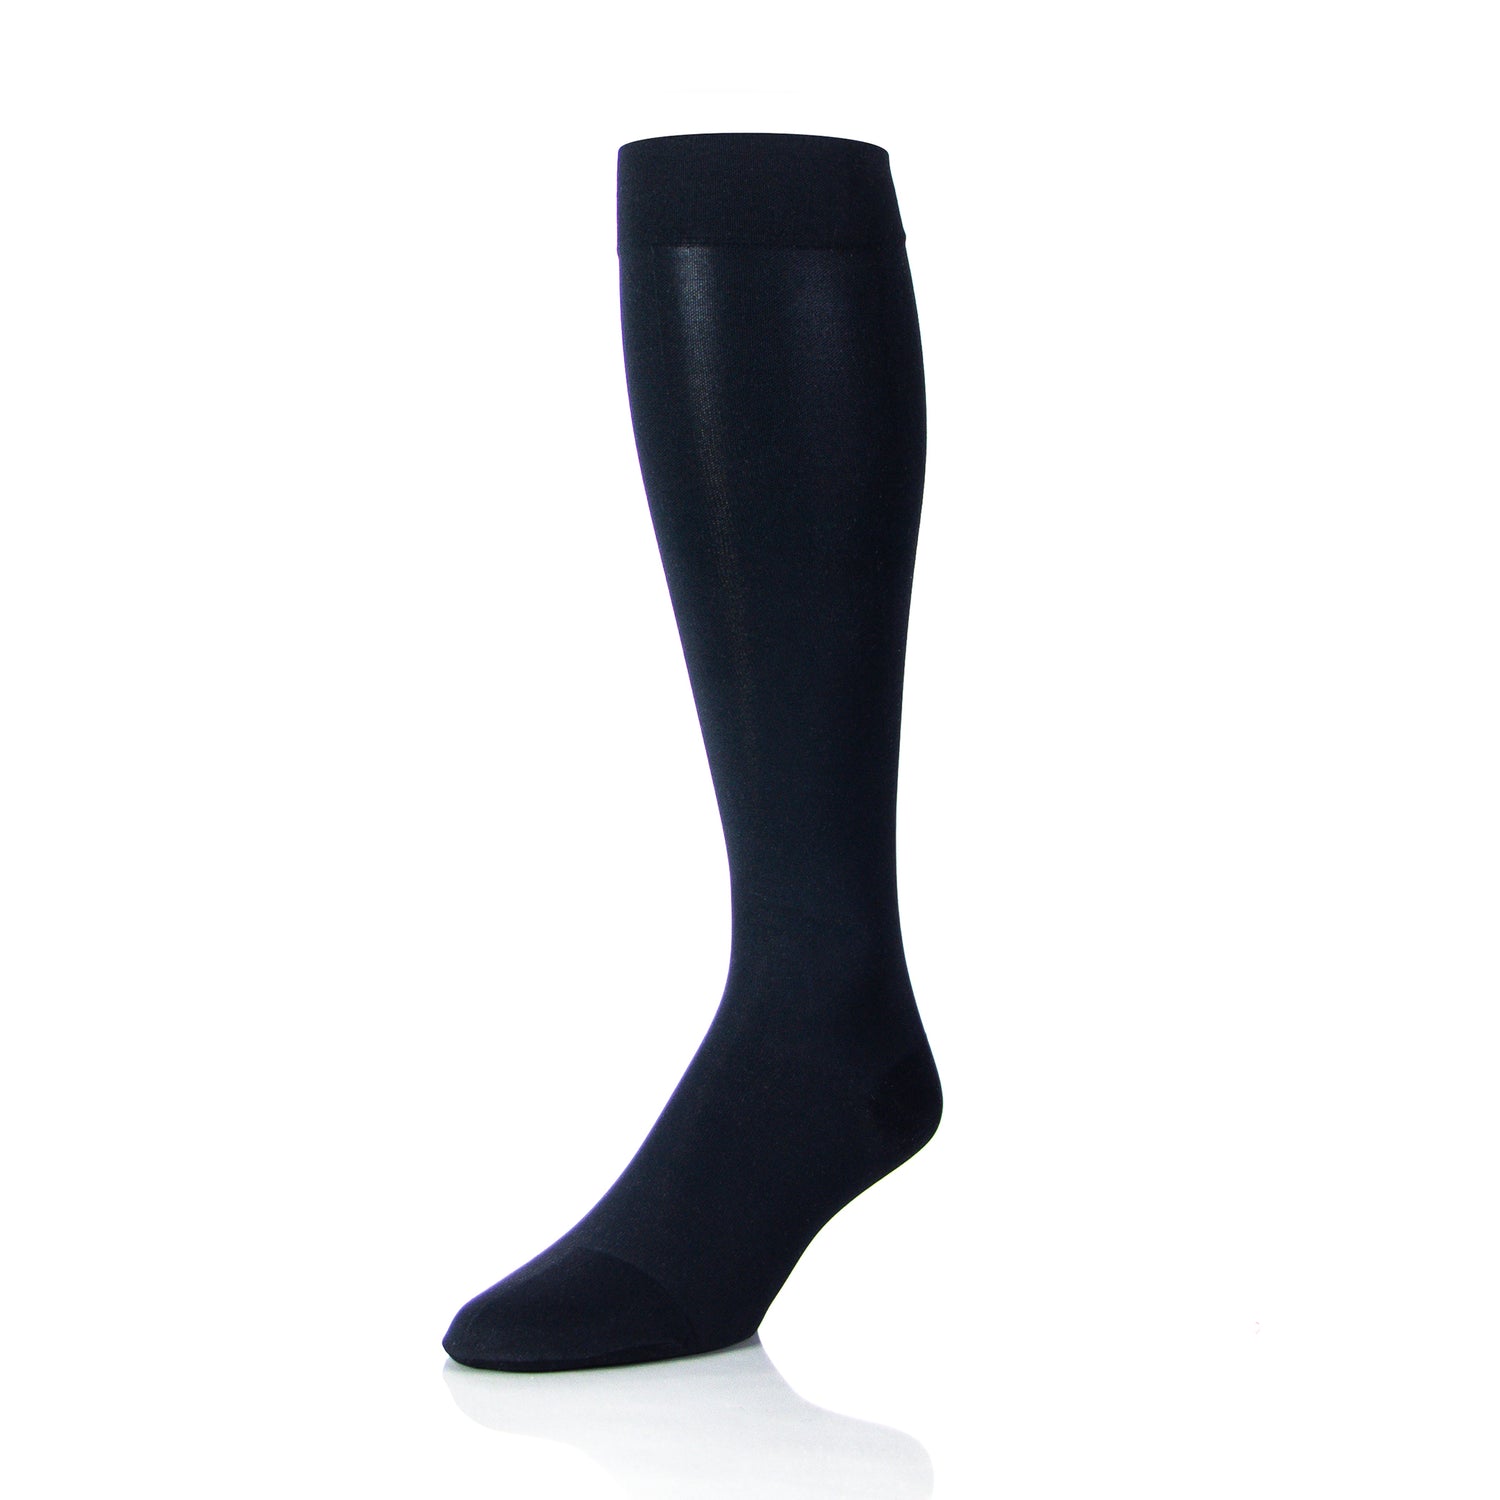 Compression Socks For Men - 20 30 mmHg